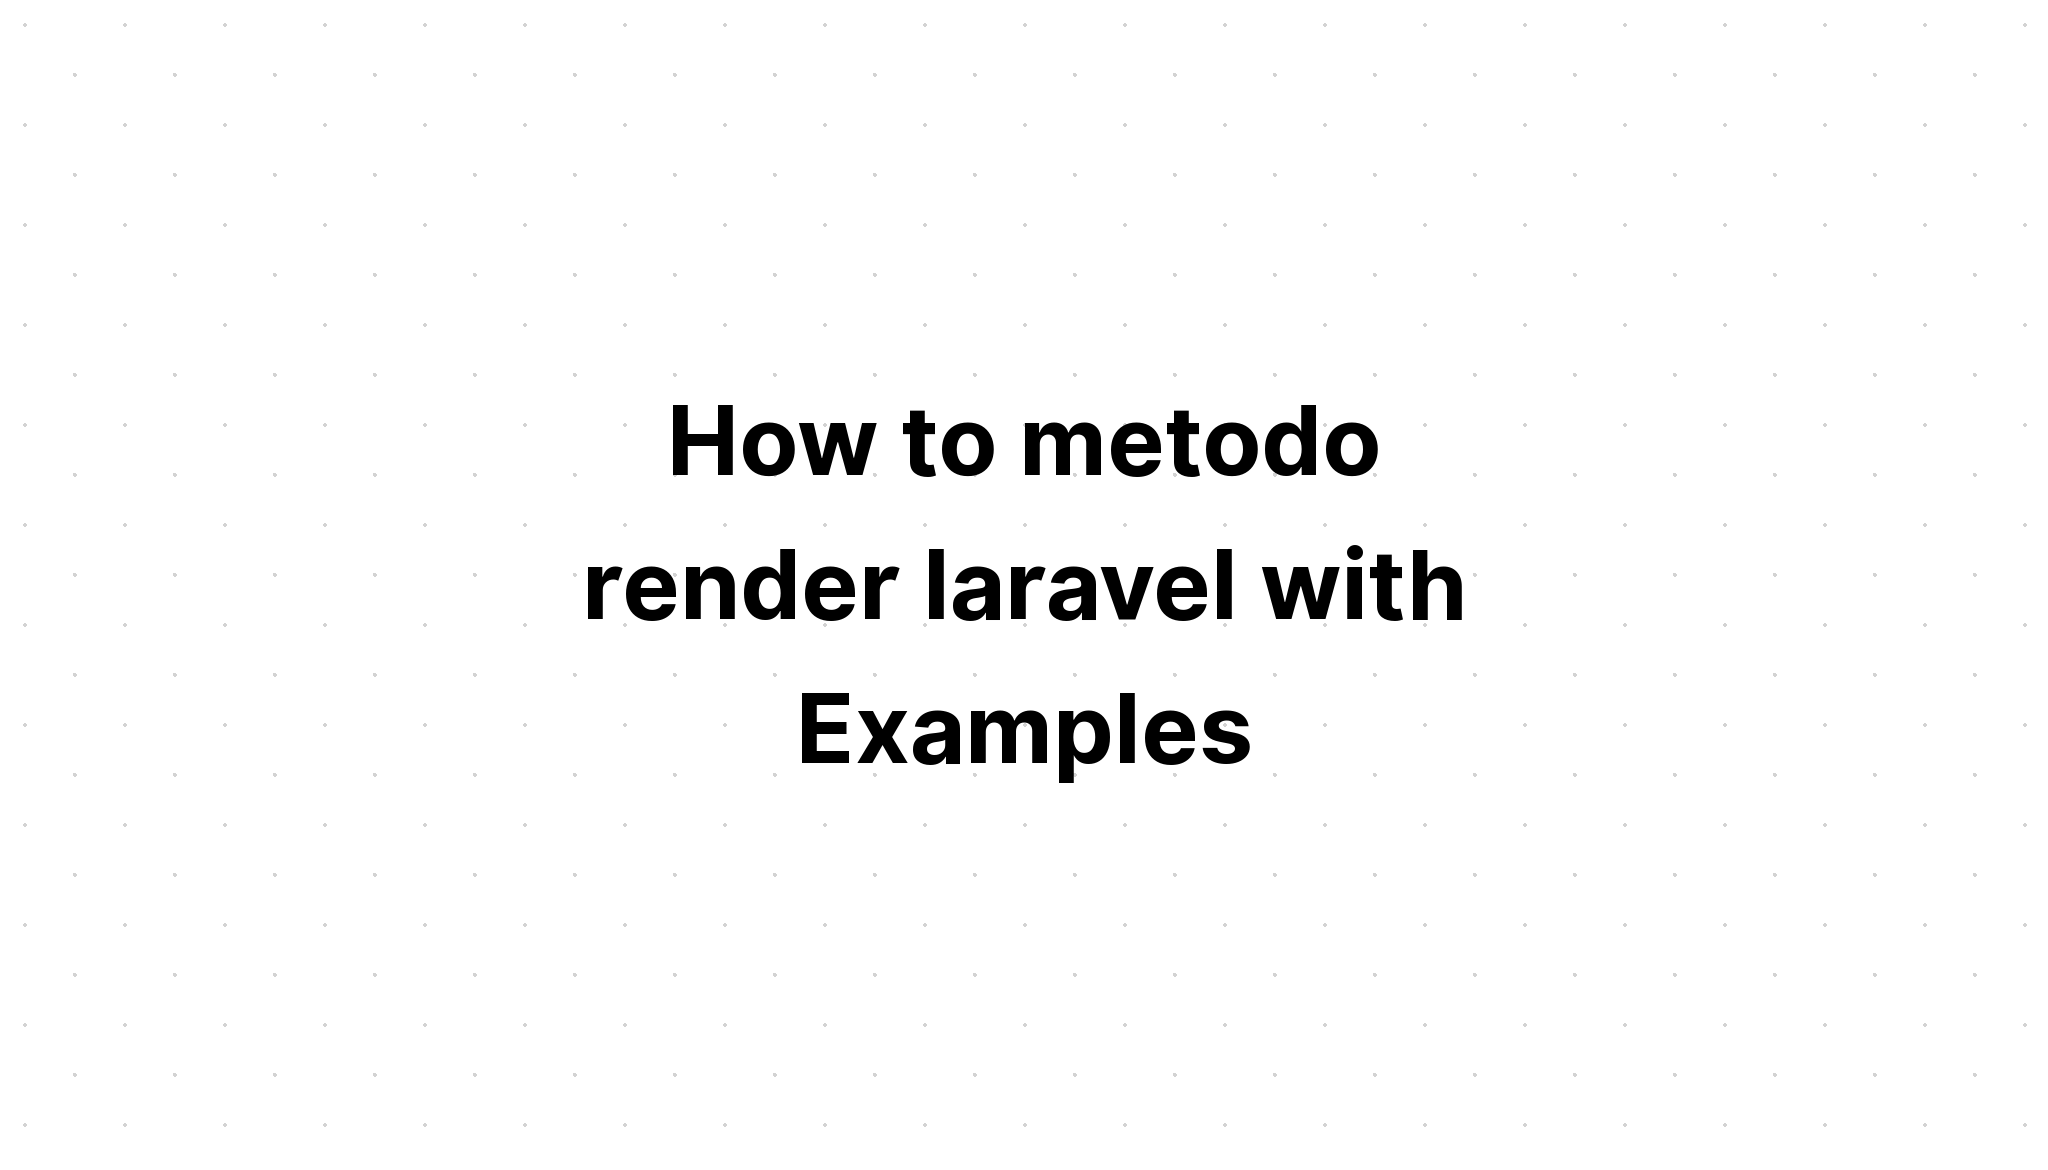 Cách metodo kết xuất laravel với các ví dụ